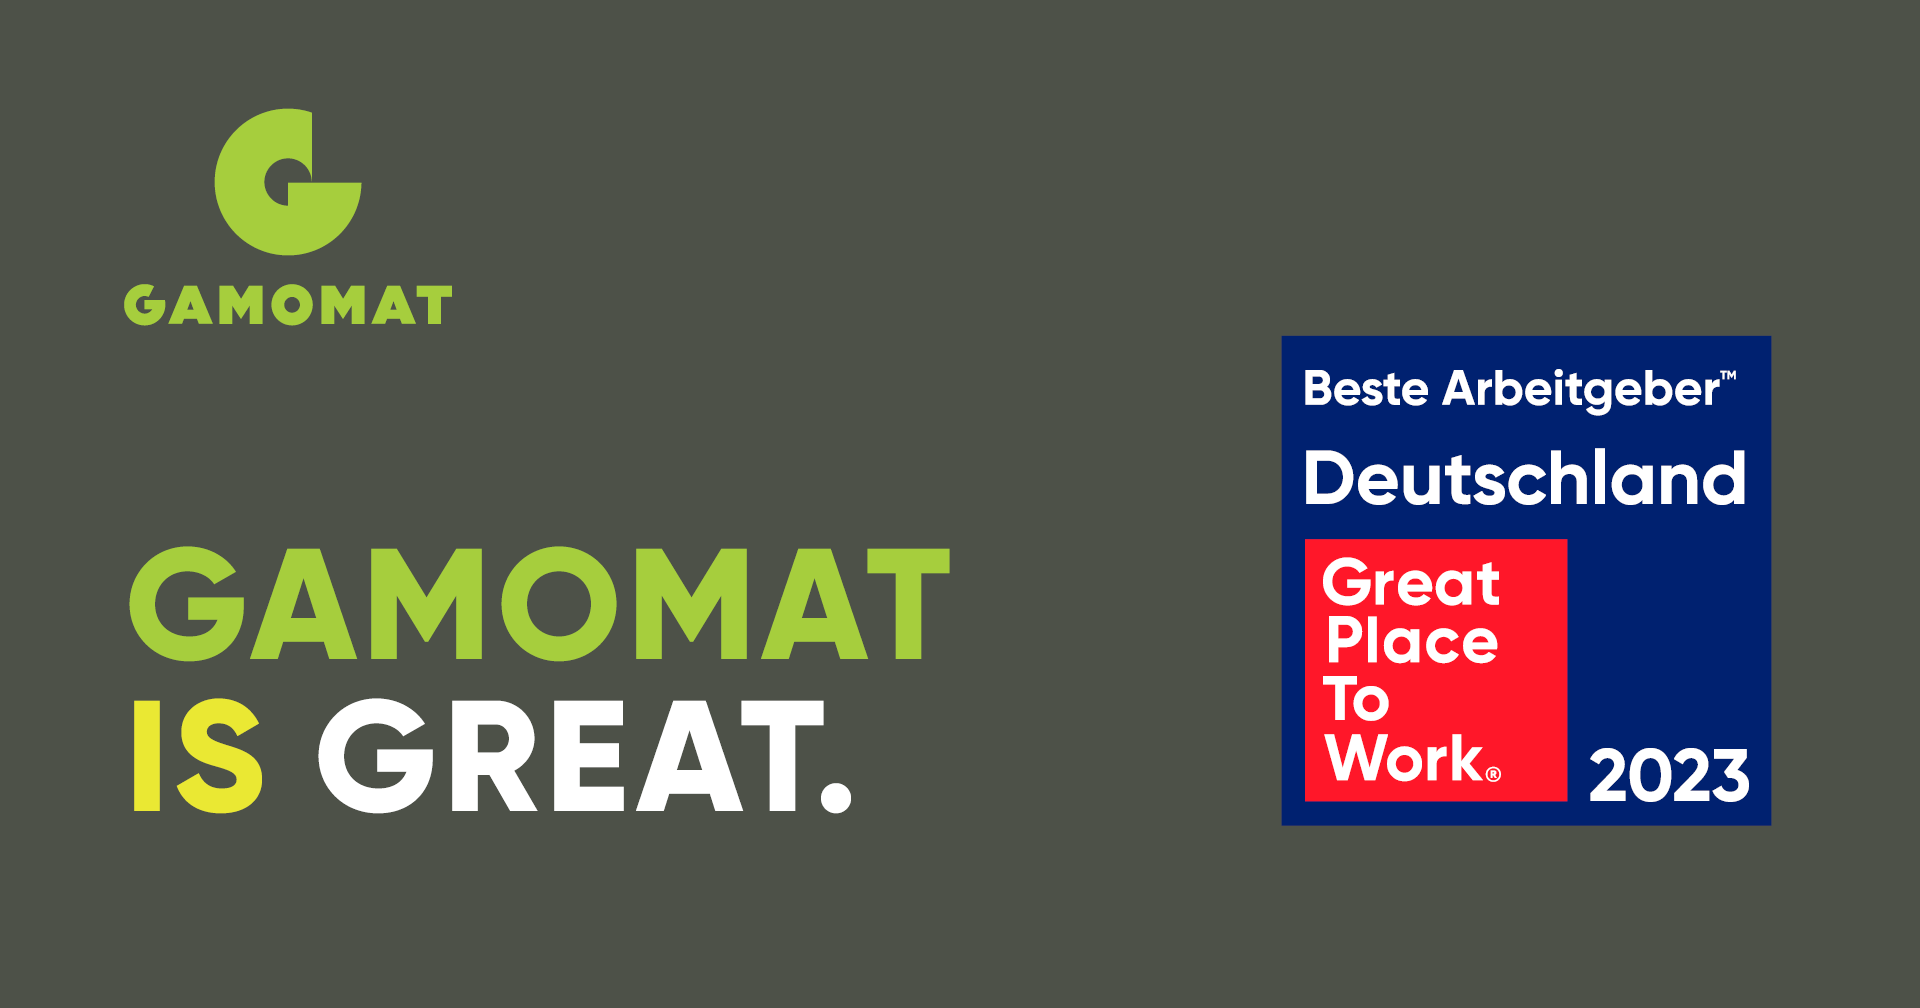 Germanyâs Best Employer 2023: GAMOMAT earns top place